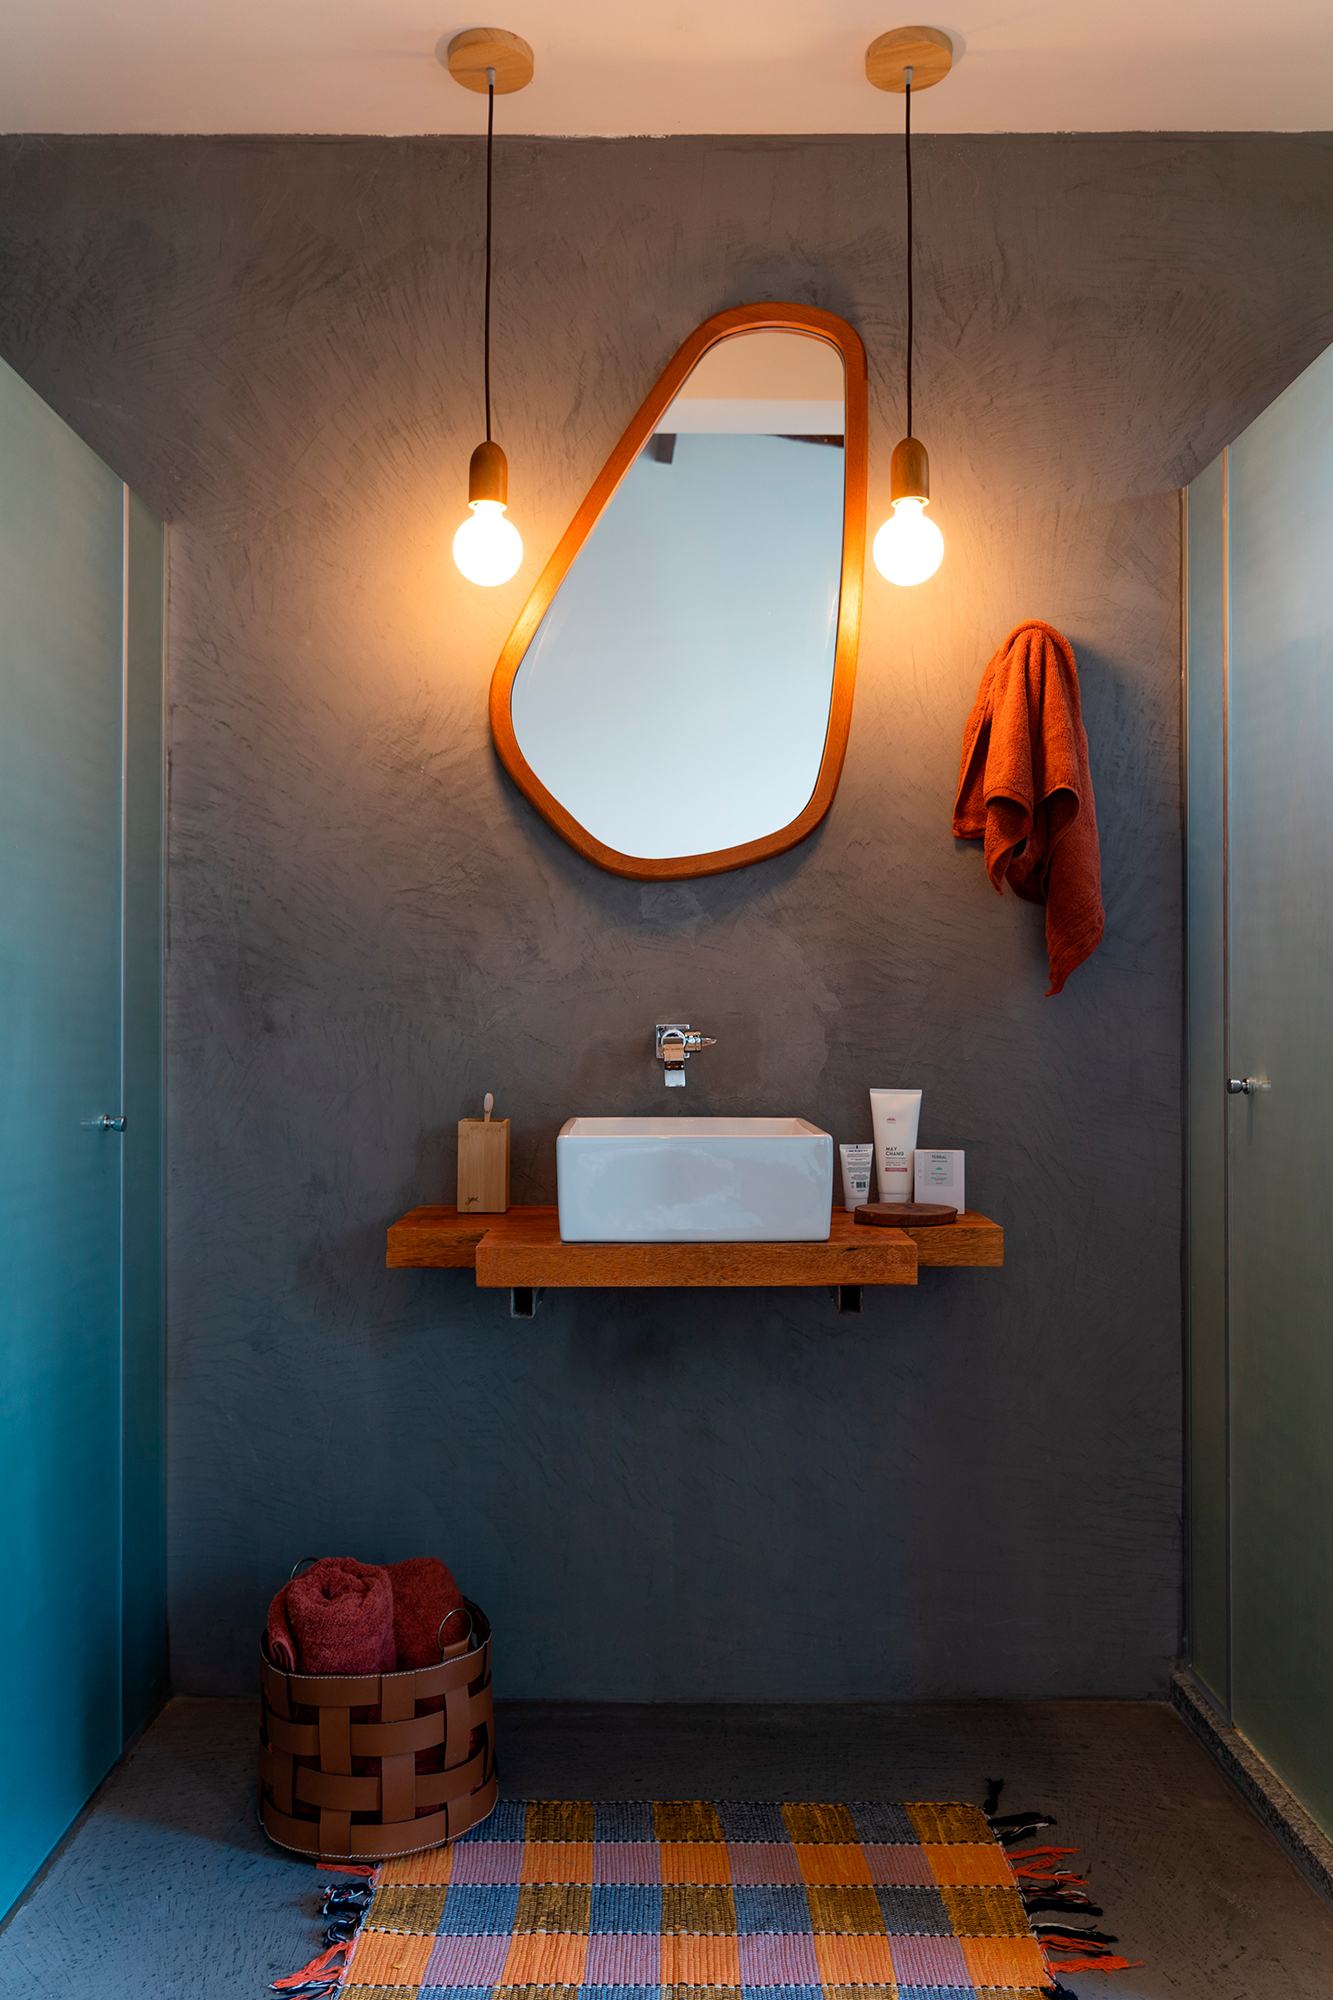 Casa sustentável Bahia conceito rústico elementos regionais Alphaz Concept decoração banheiro espelho cimento queimado